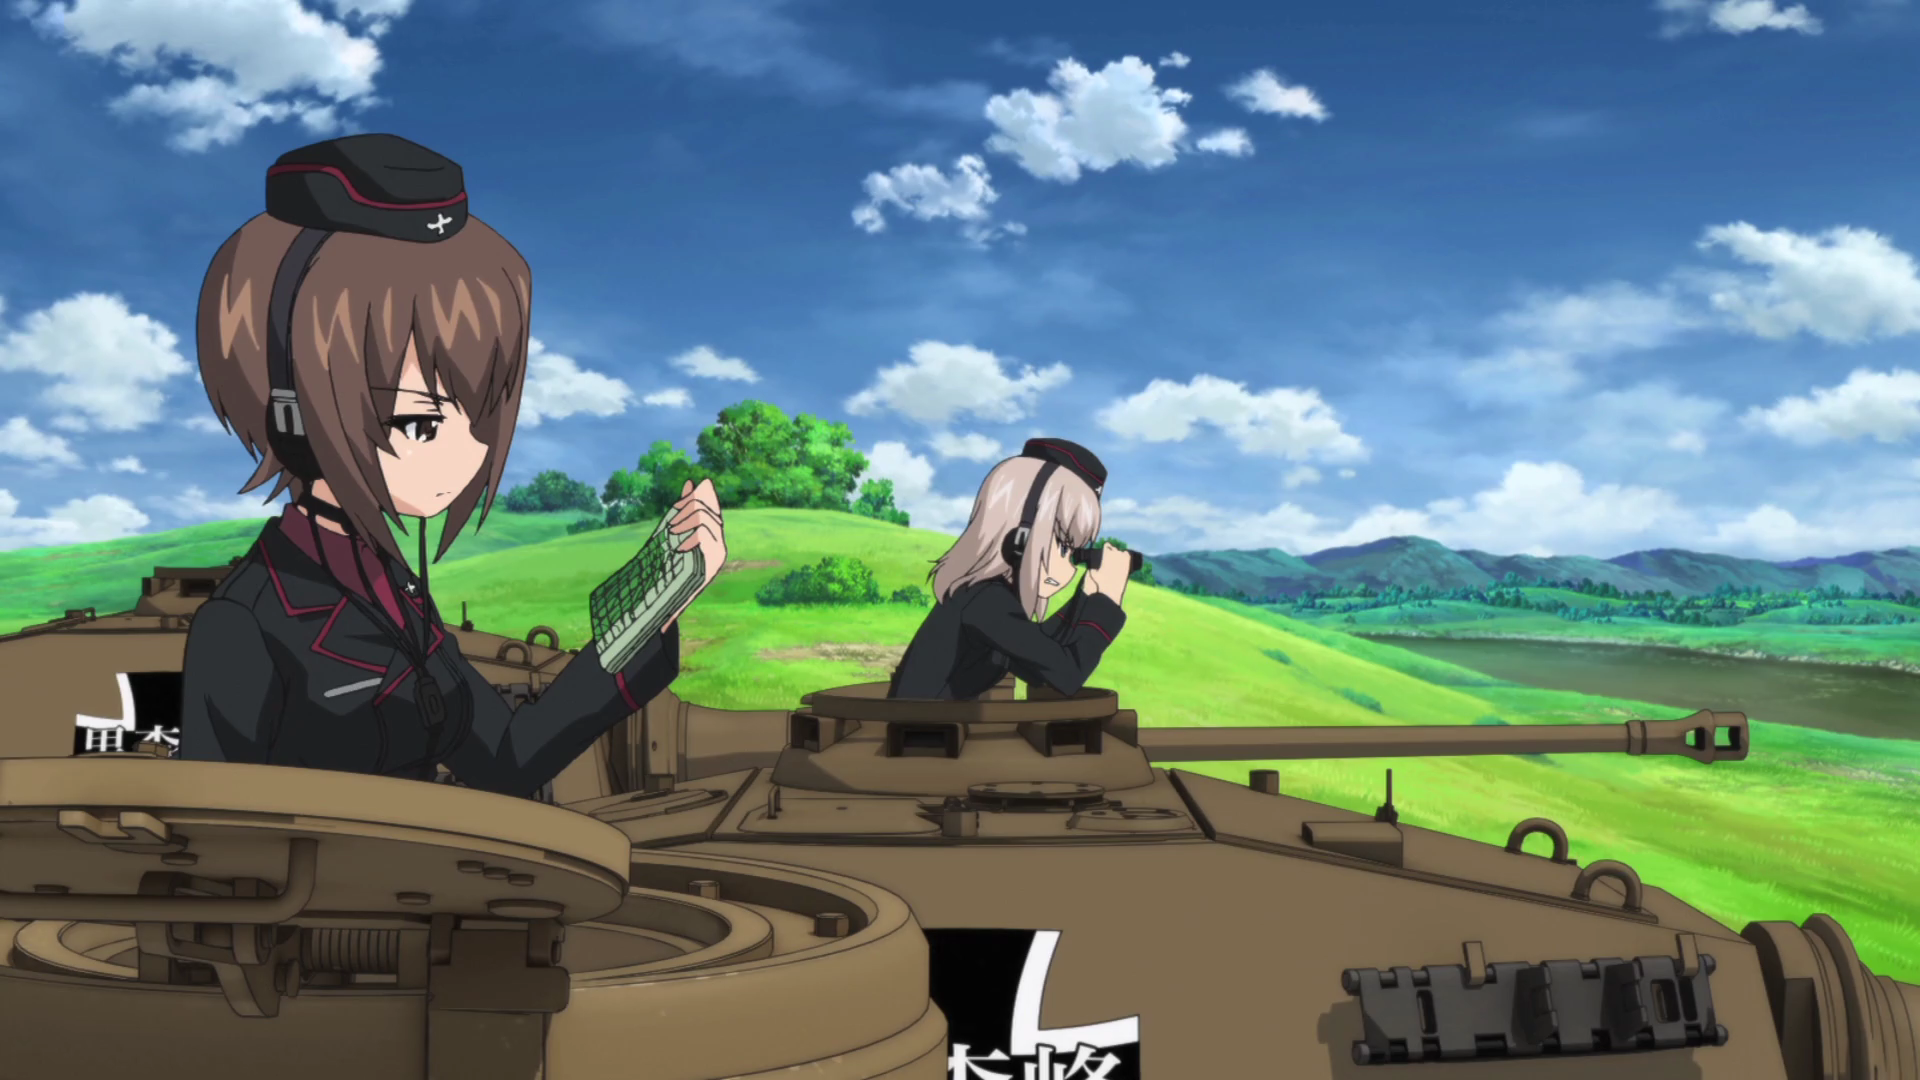 Girls Und Panzer Live , HD Wallpaper & Backgrounds